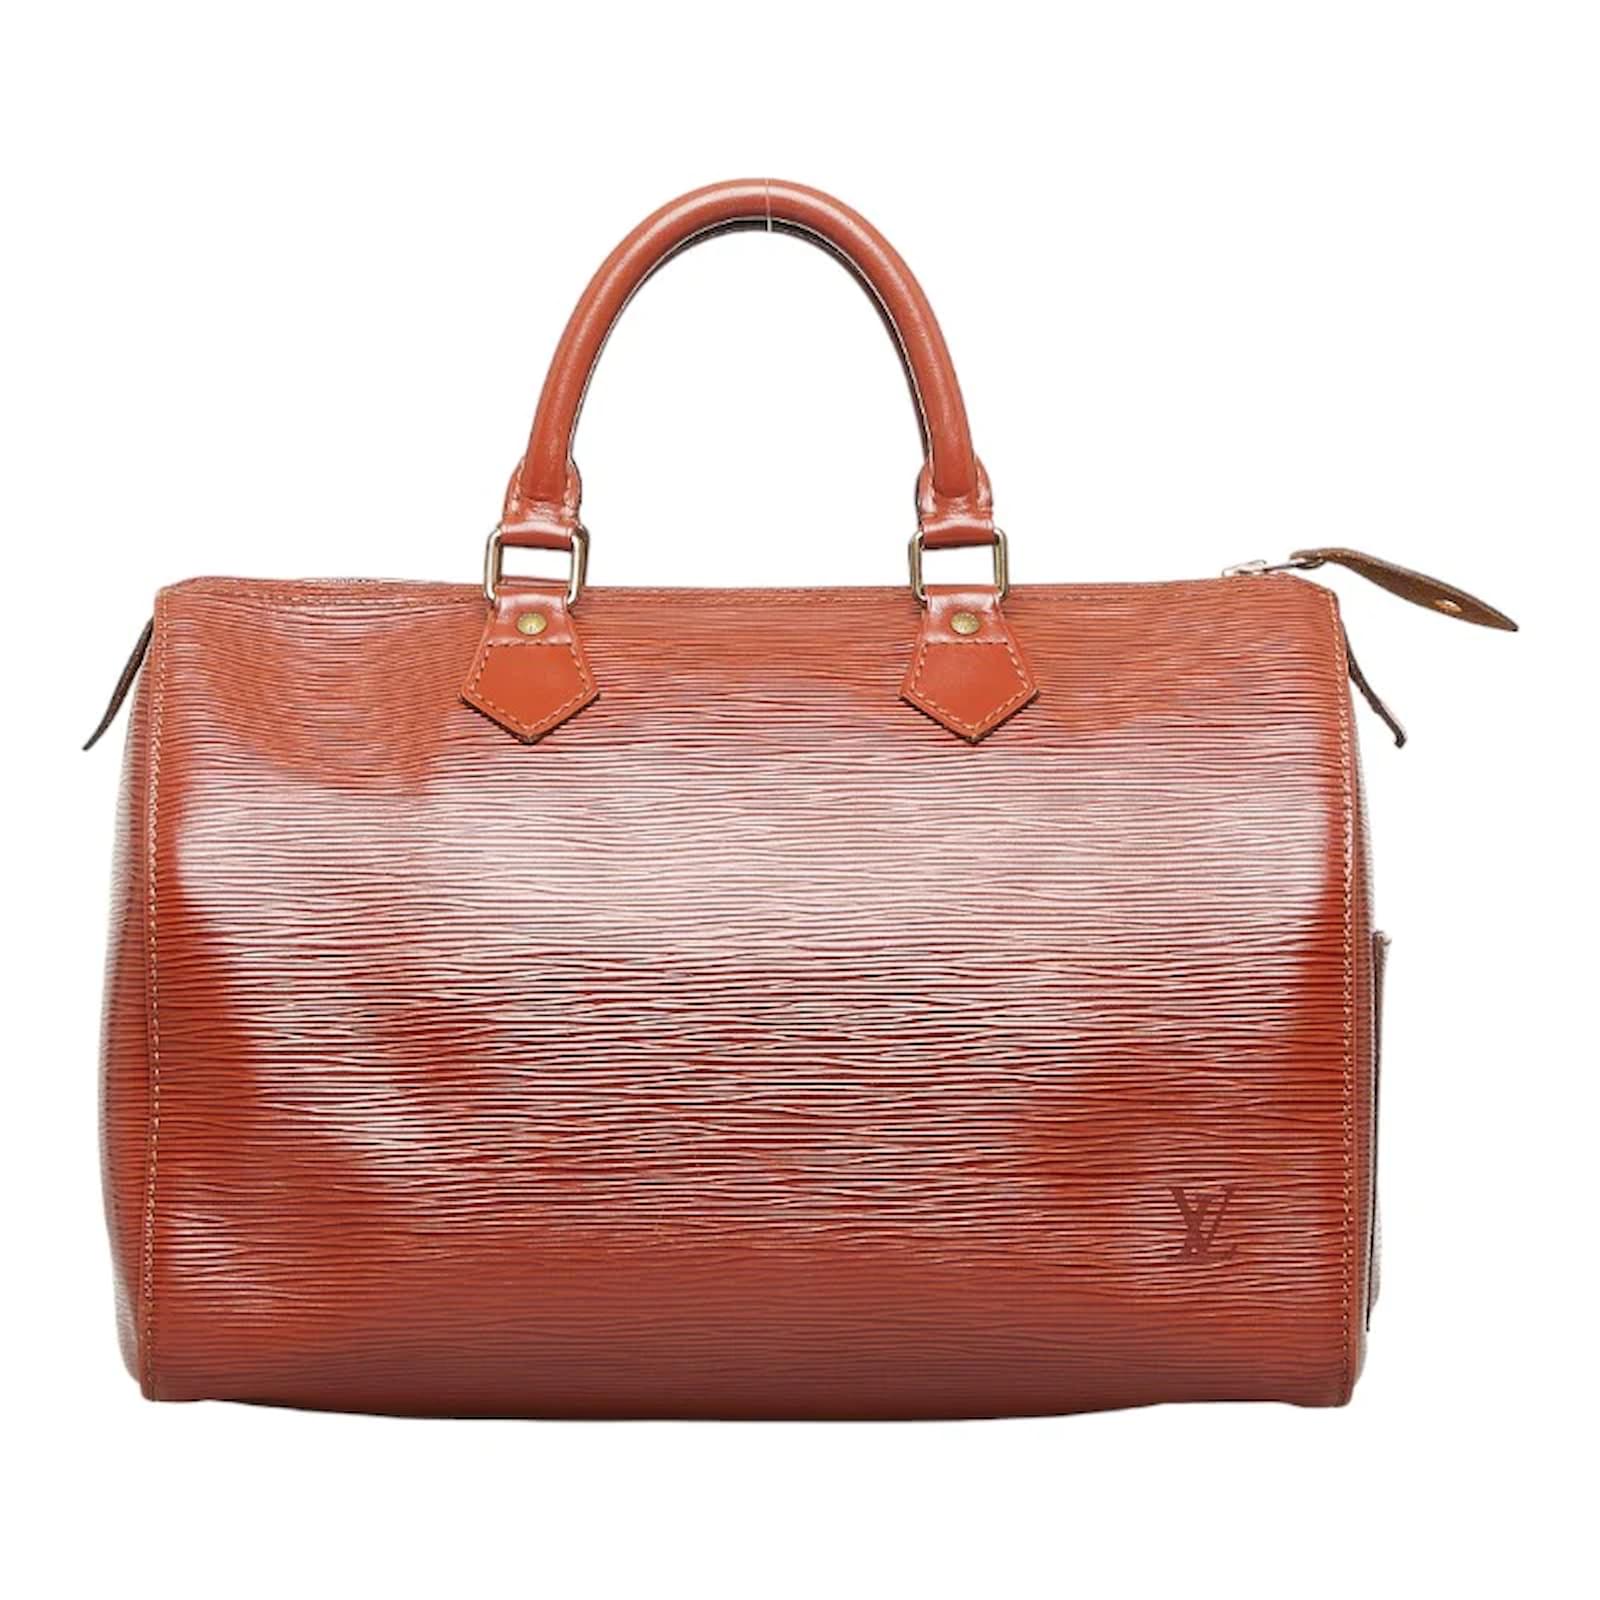 Buy Louis Vuitton Monogram Canvas Speedy 25 M41109 Purse Handbag at  .in